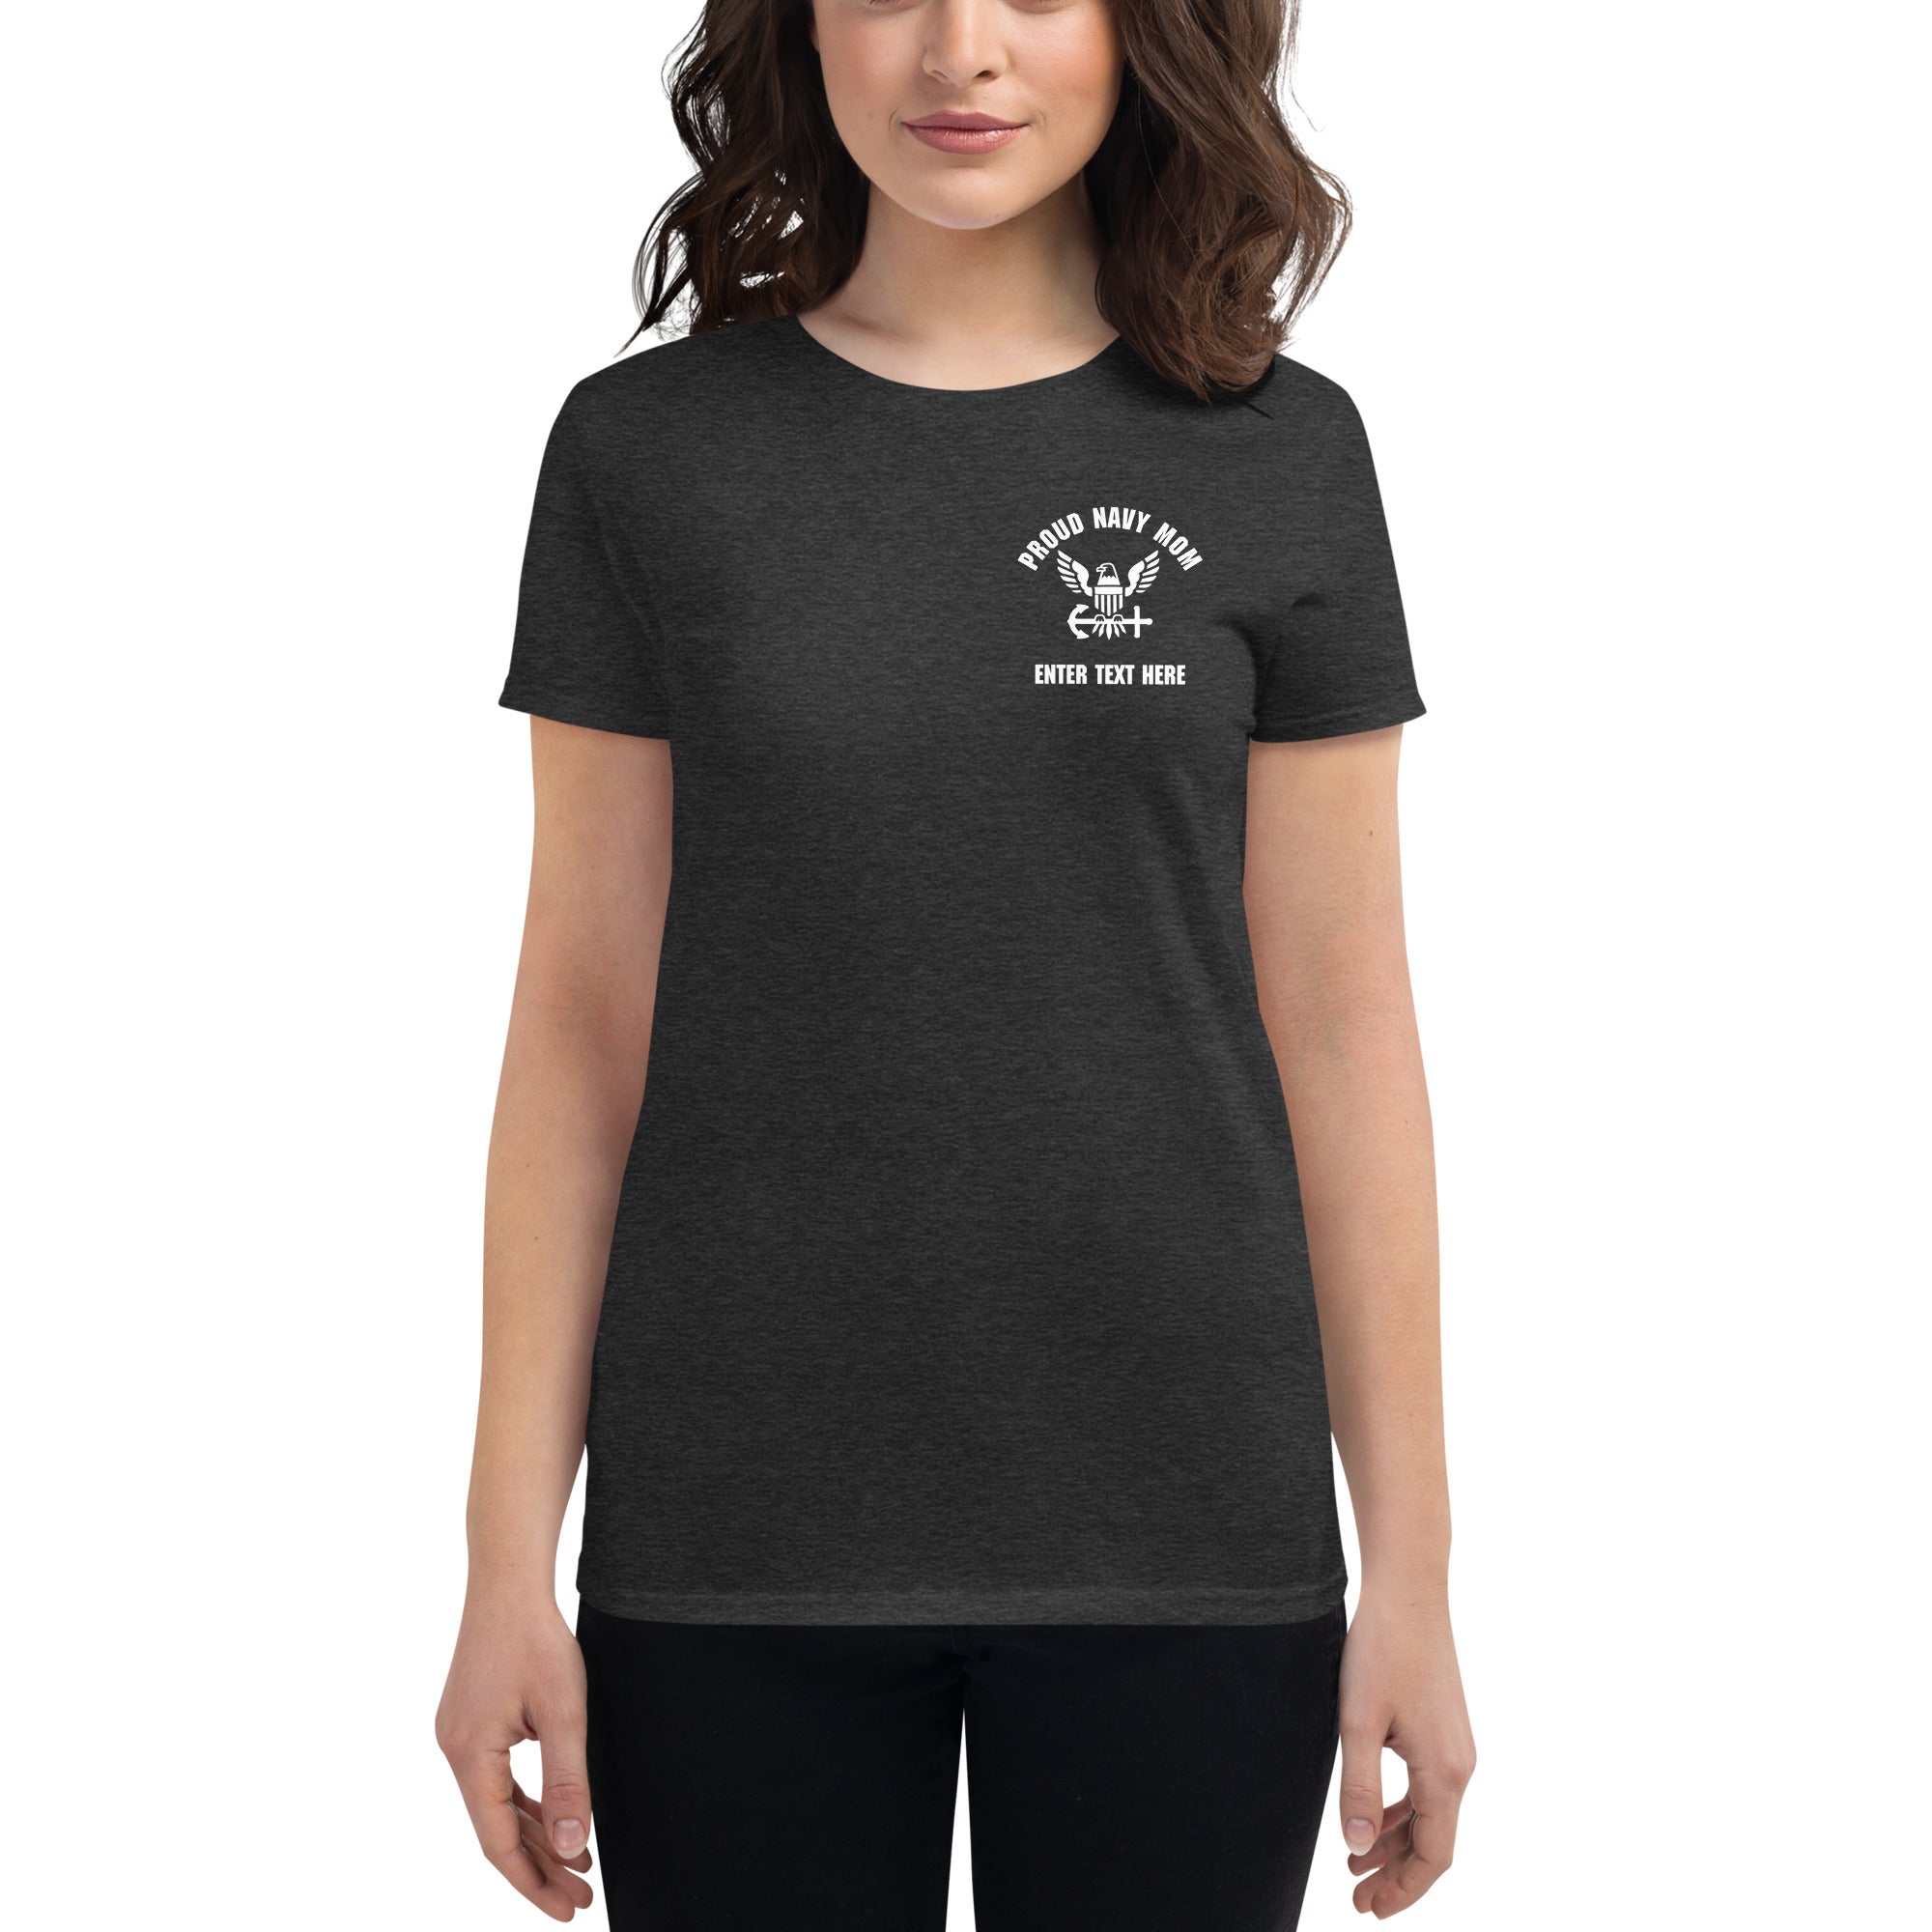 Customizable USS DWIGHT D. EISENHOWER t-shirt